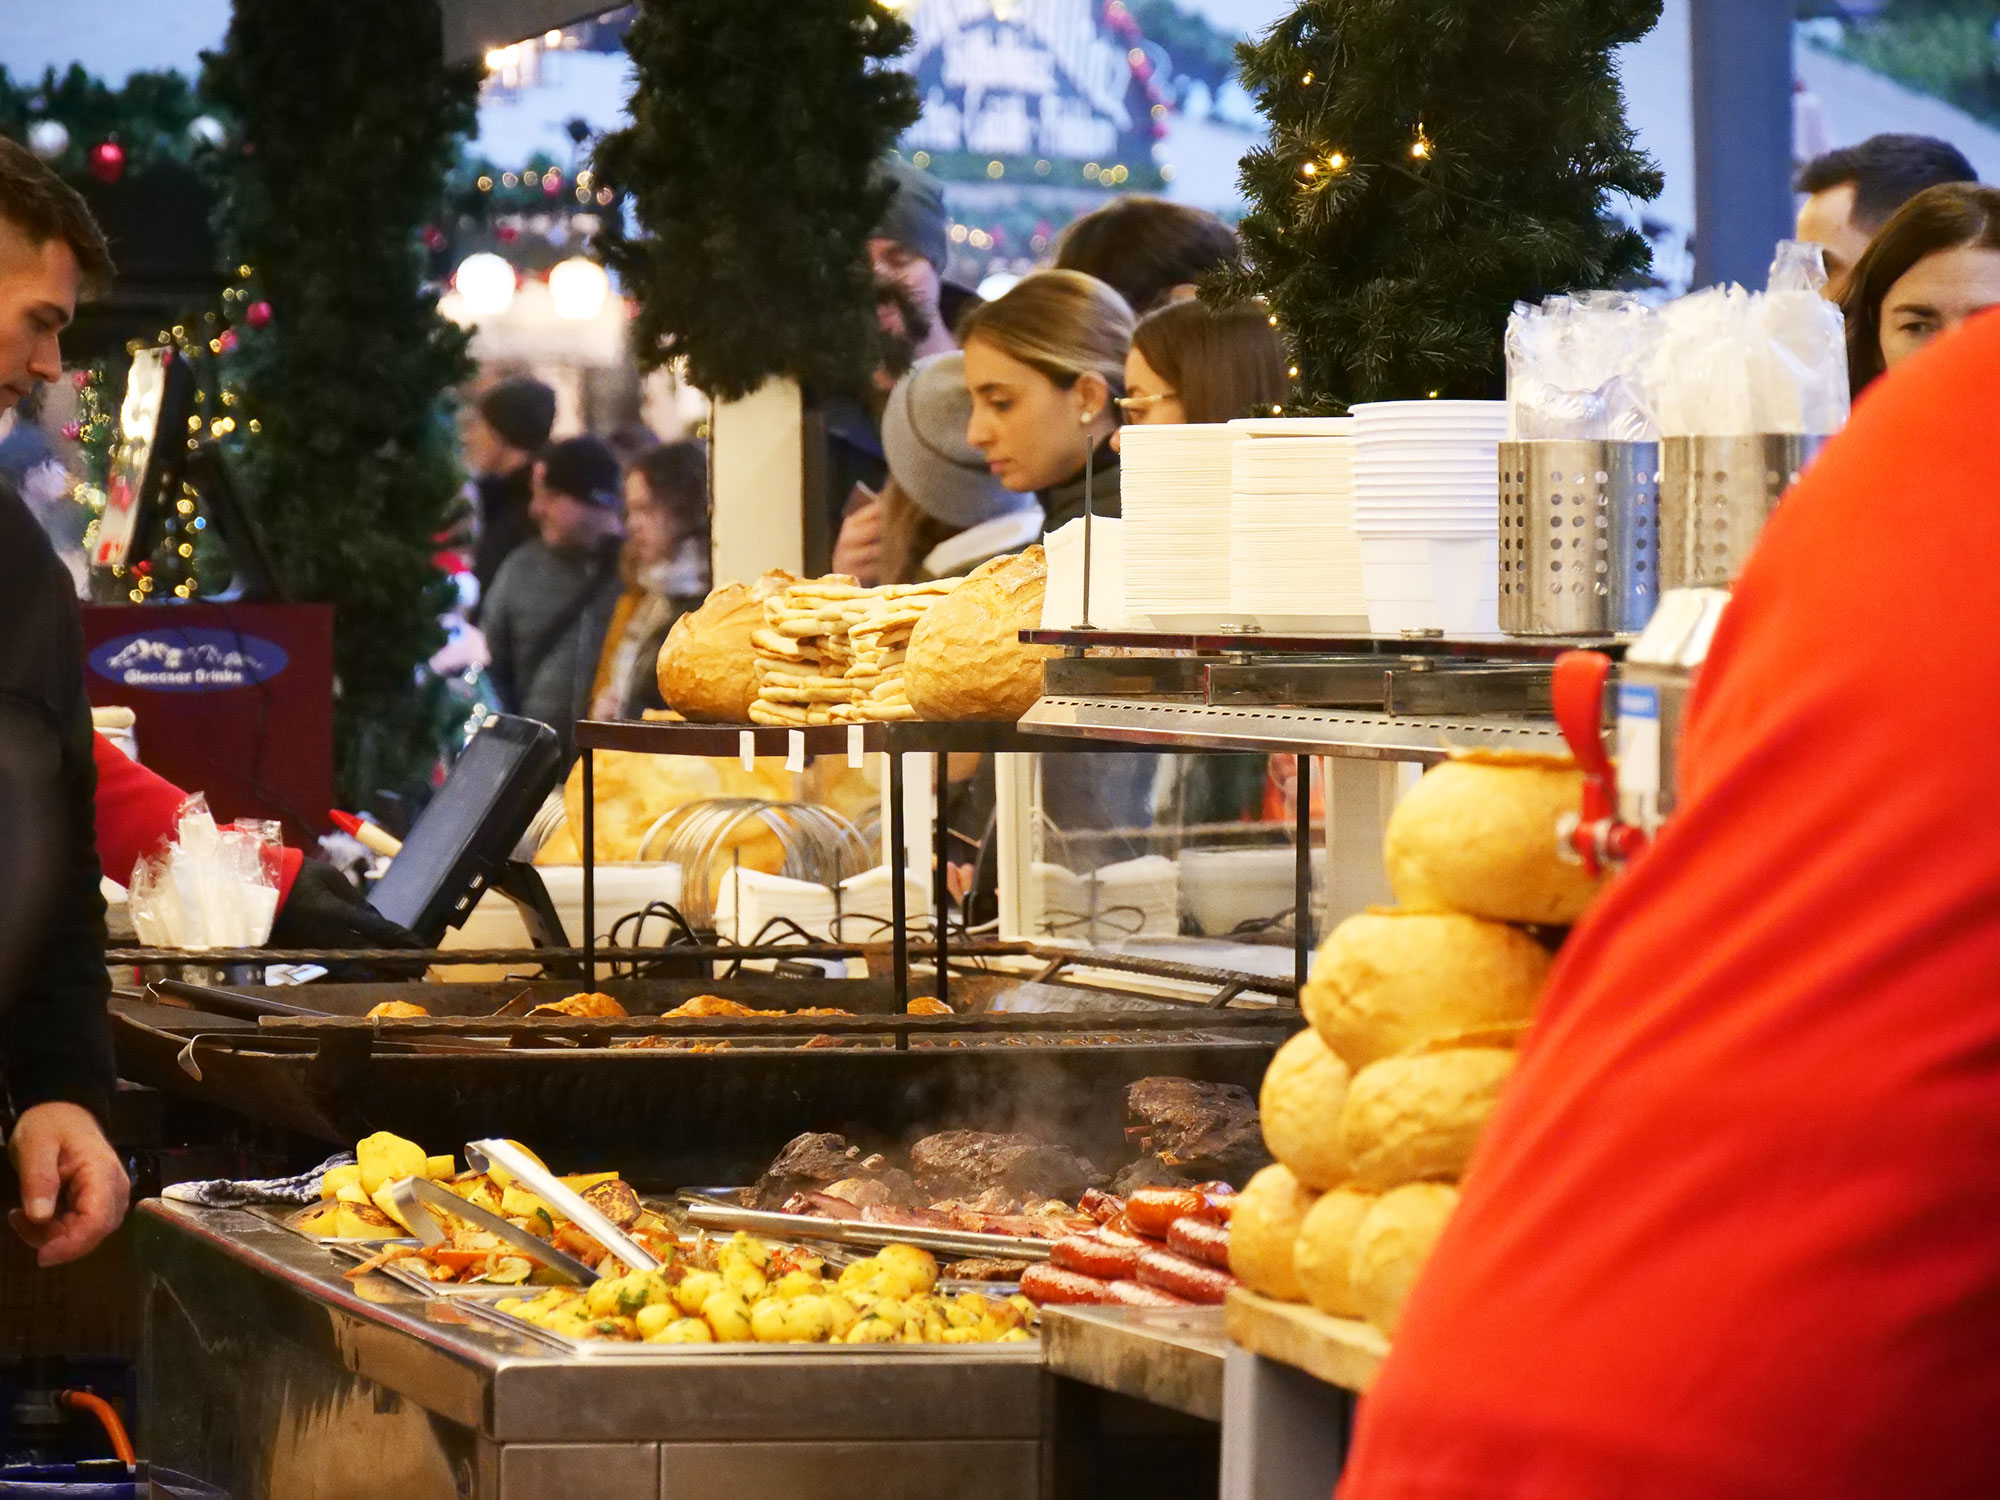 Olcsóbban lehet enni egy belvárosi hotel éttermében, mint a Vörösmarty téri karácsonyi vásáron – kiakadt a belvárosi ellenzéki képviselő